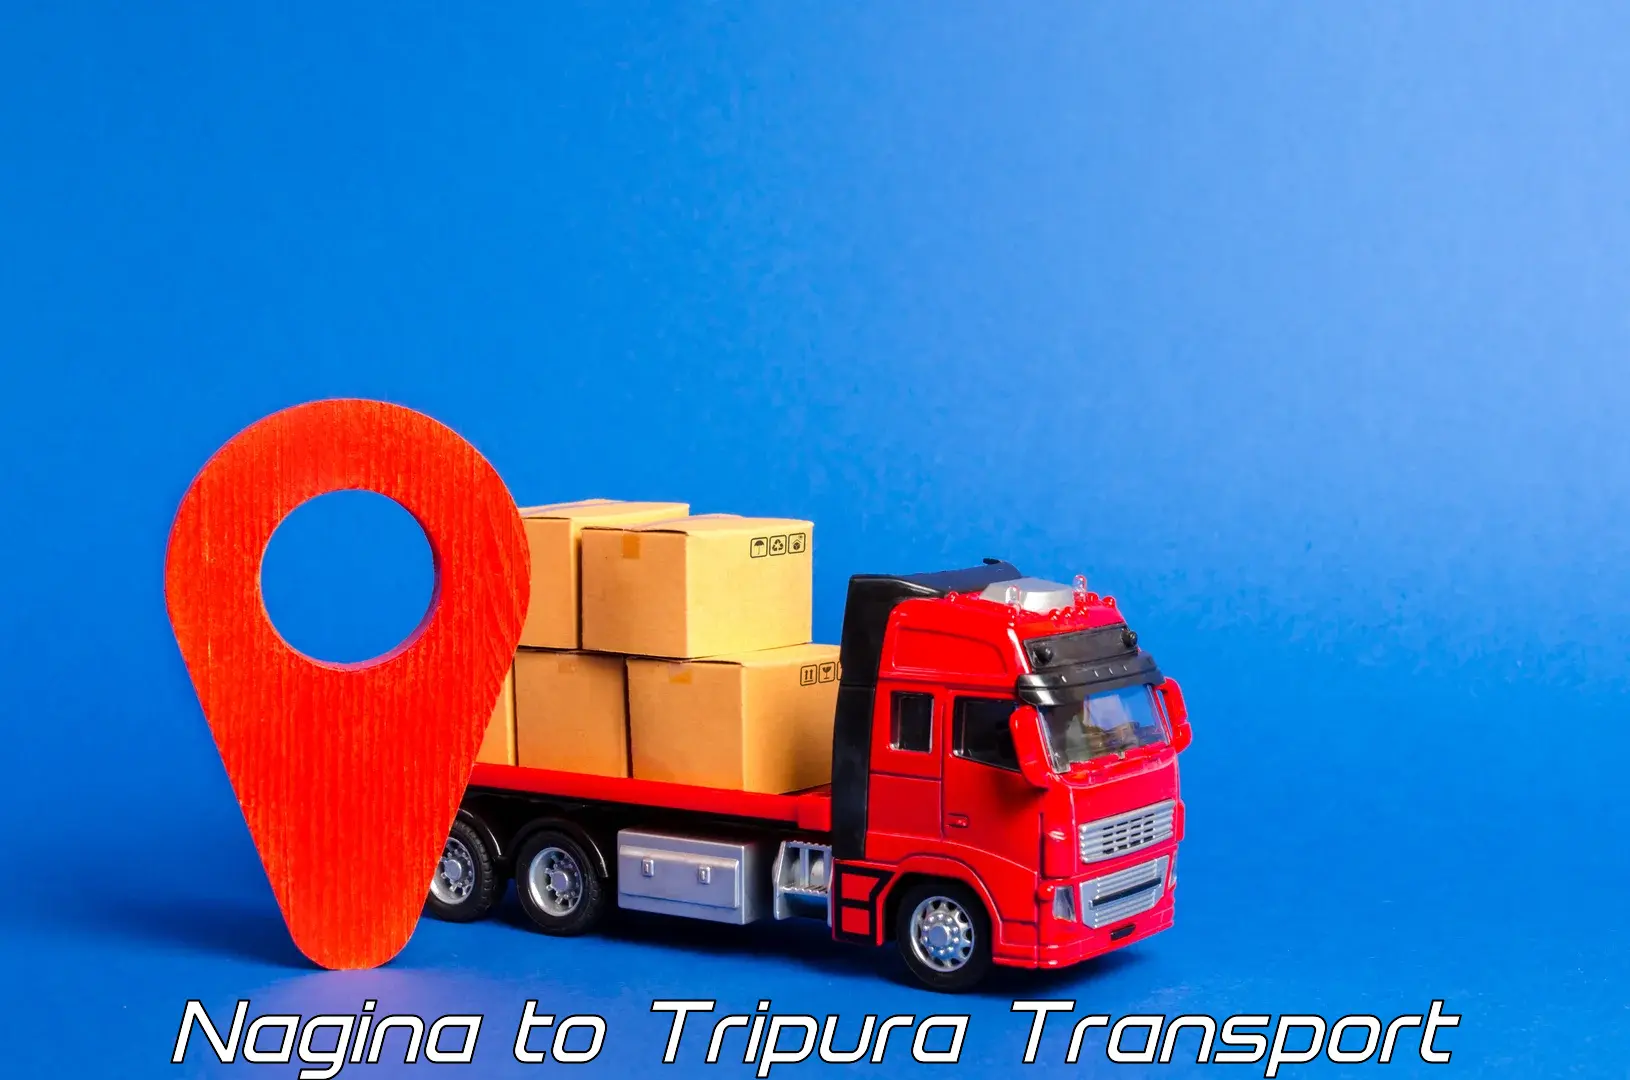 Container transport service Nagina to Manu Bazar